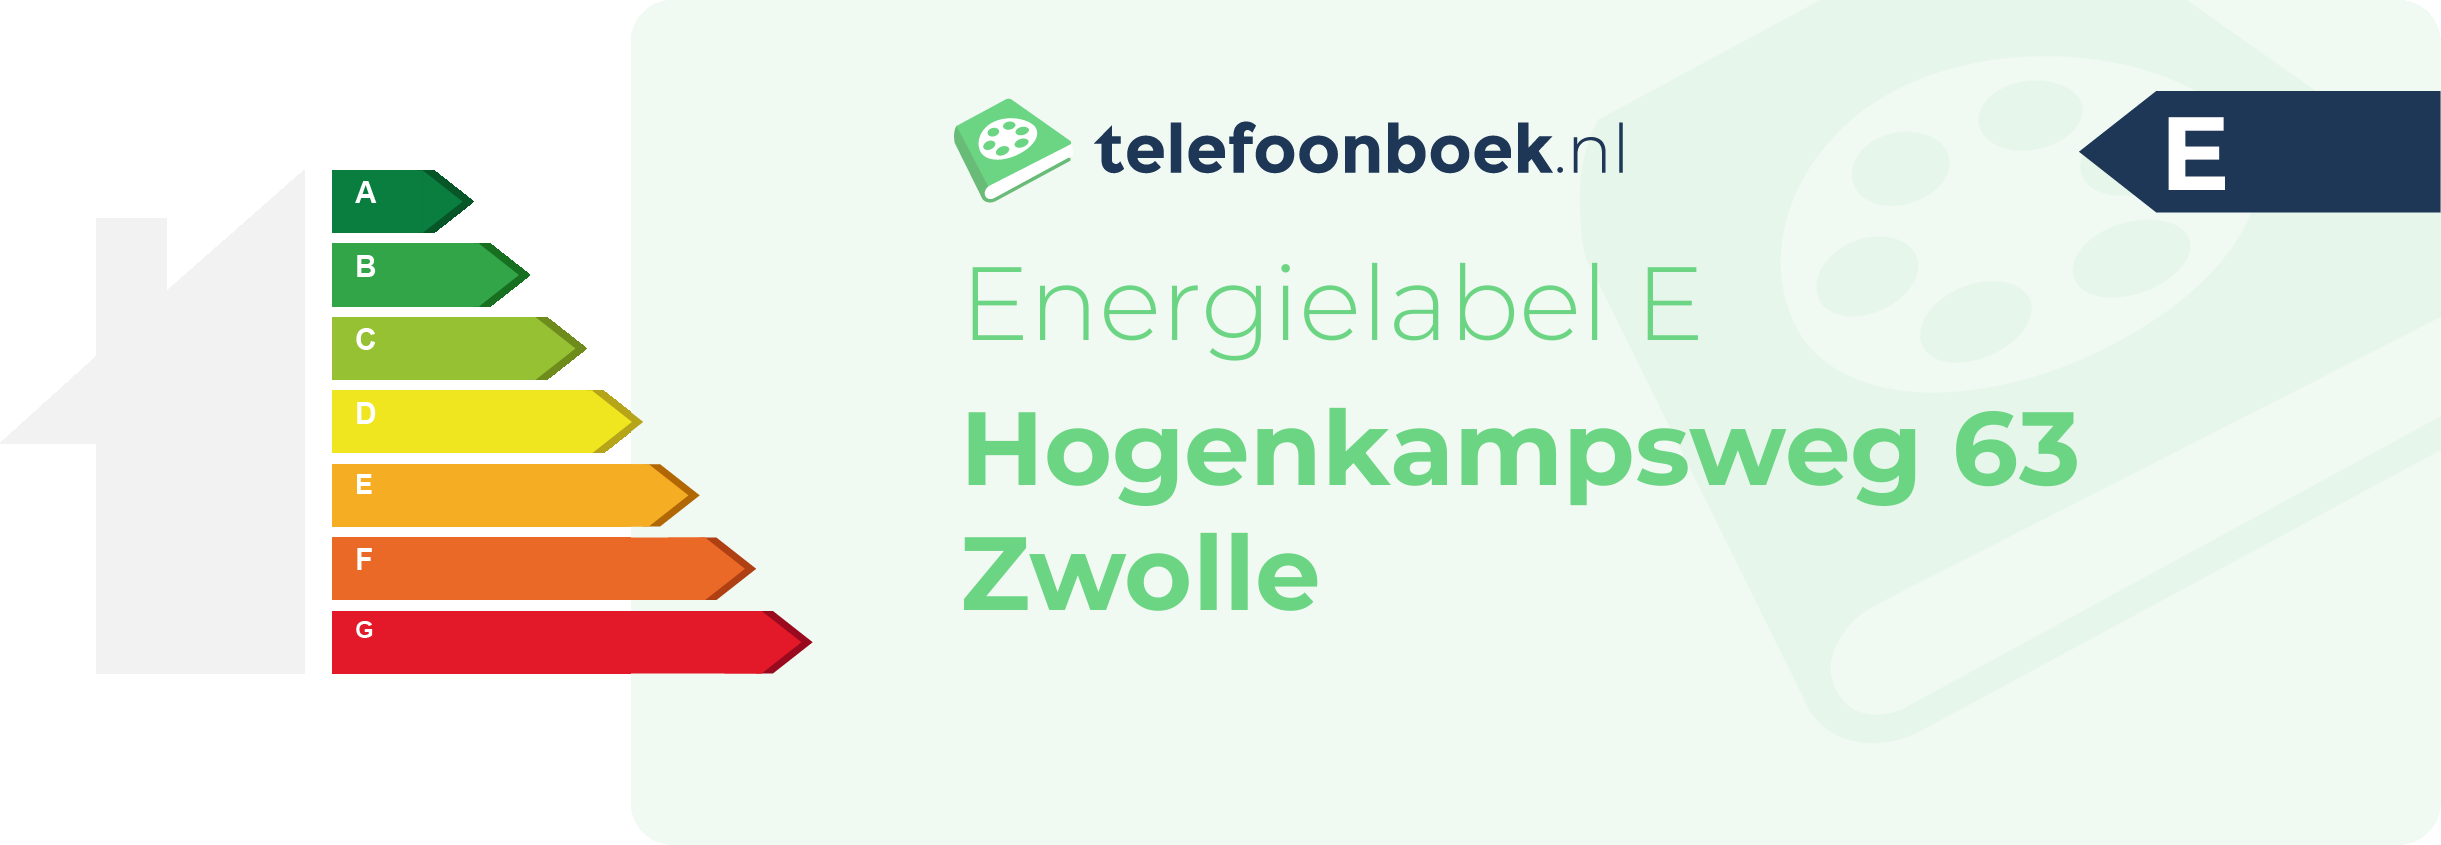 Energielabel Hogenkampsweg 63 Zwolle